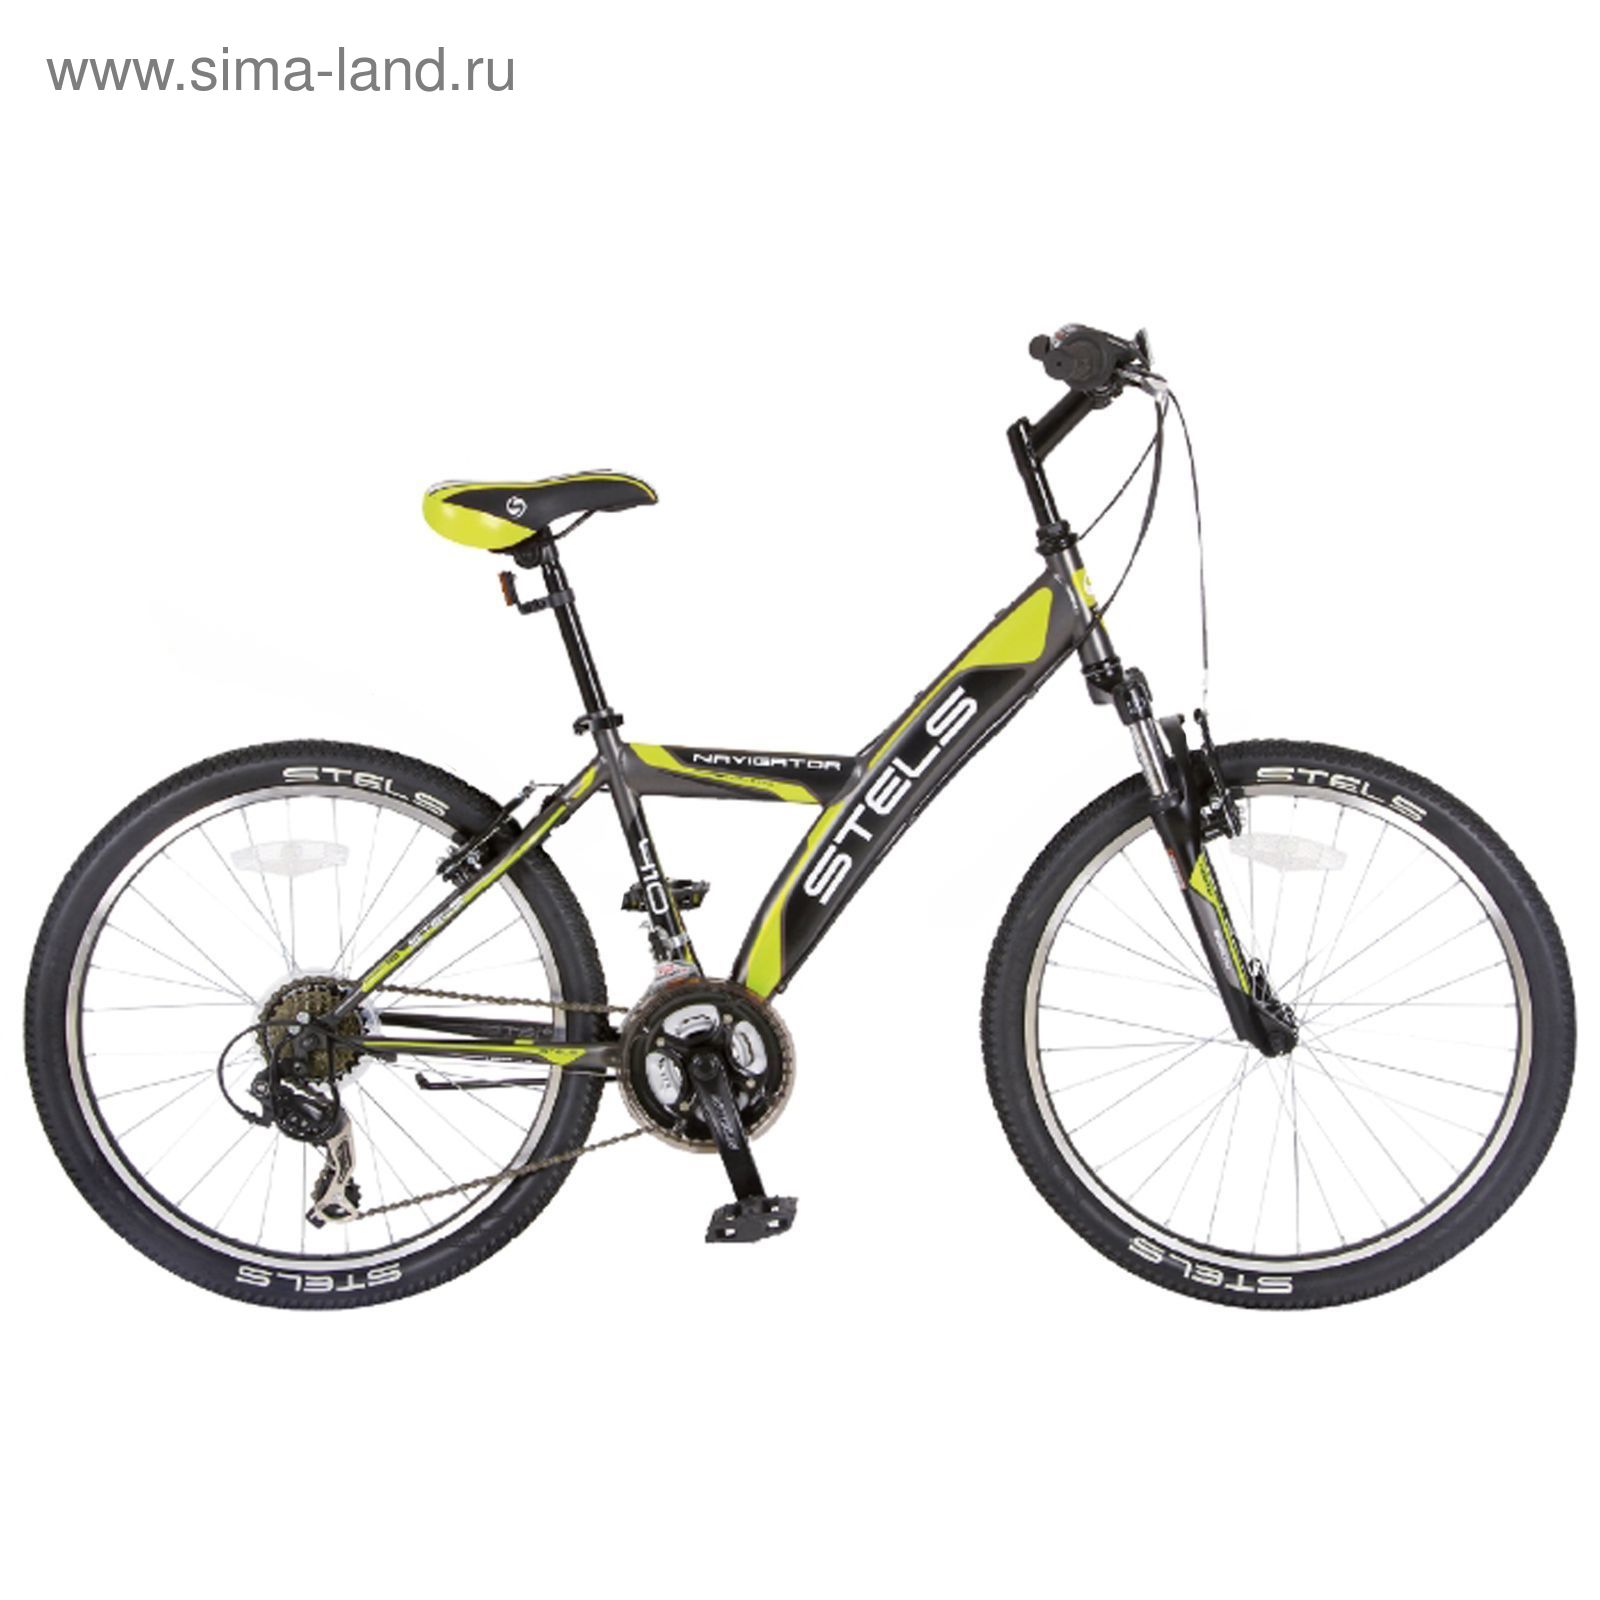 Велосипед 24" Stels Navigator-410 V, 2016, цвет серый/салатовый/чёрный, размер 15"